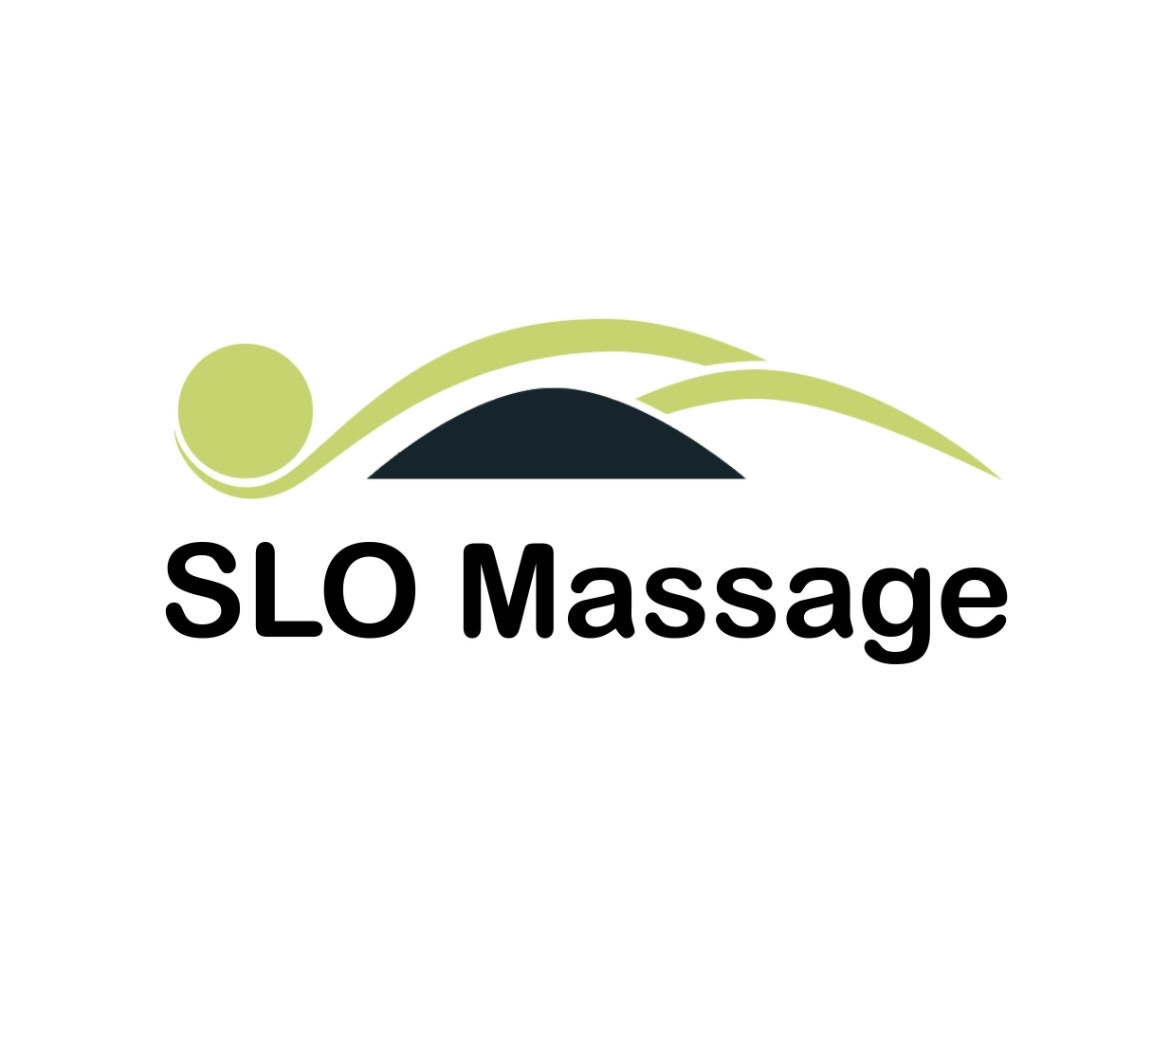 SLO Massage